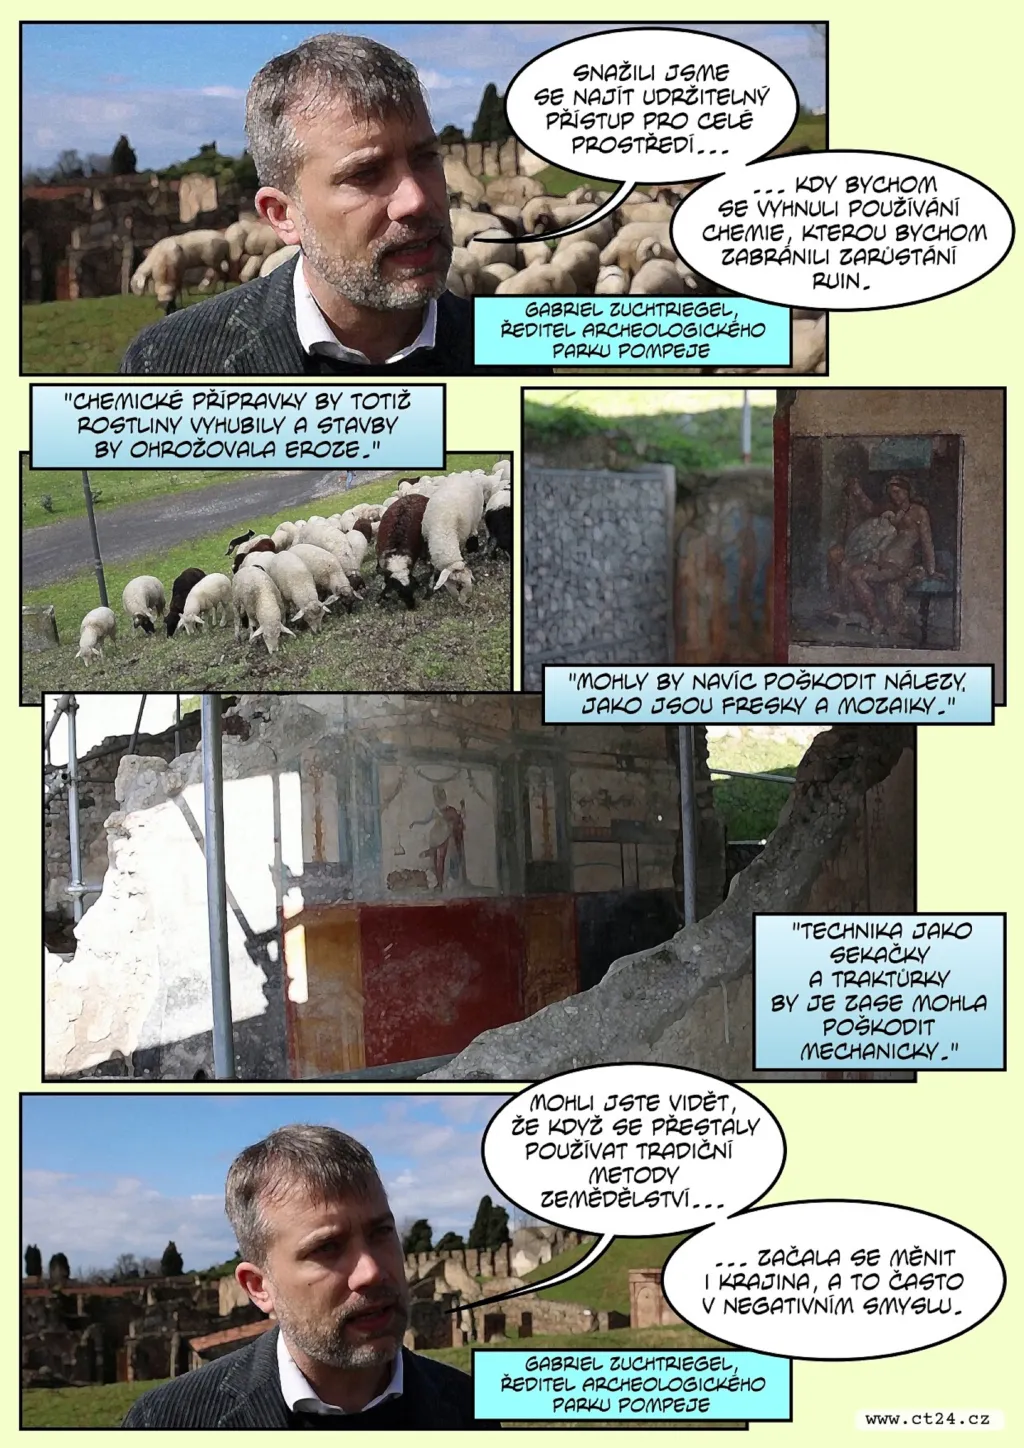 Ovce zachraňují Pompeje